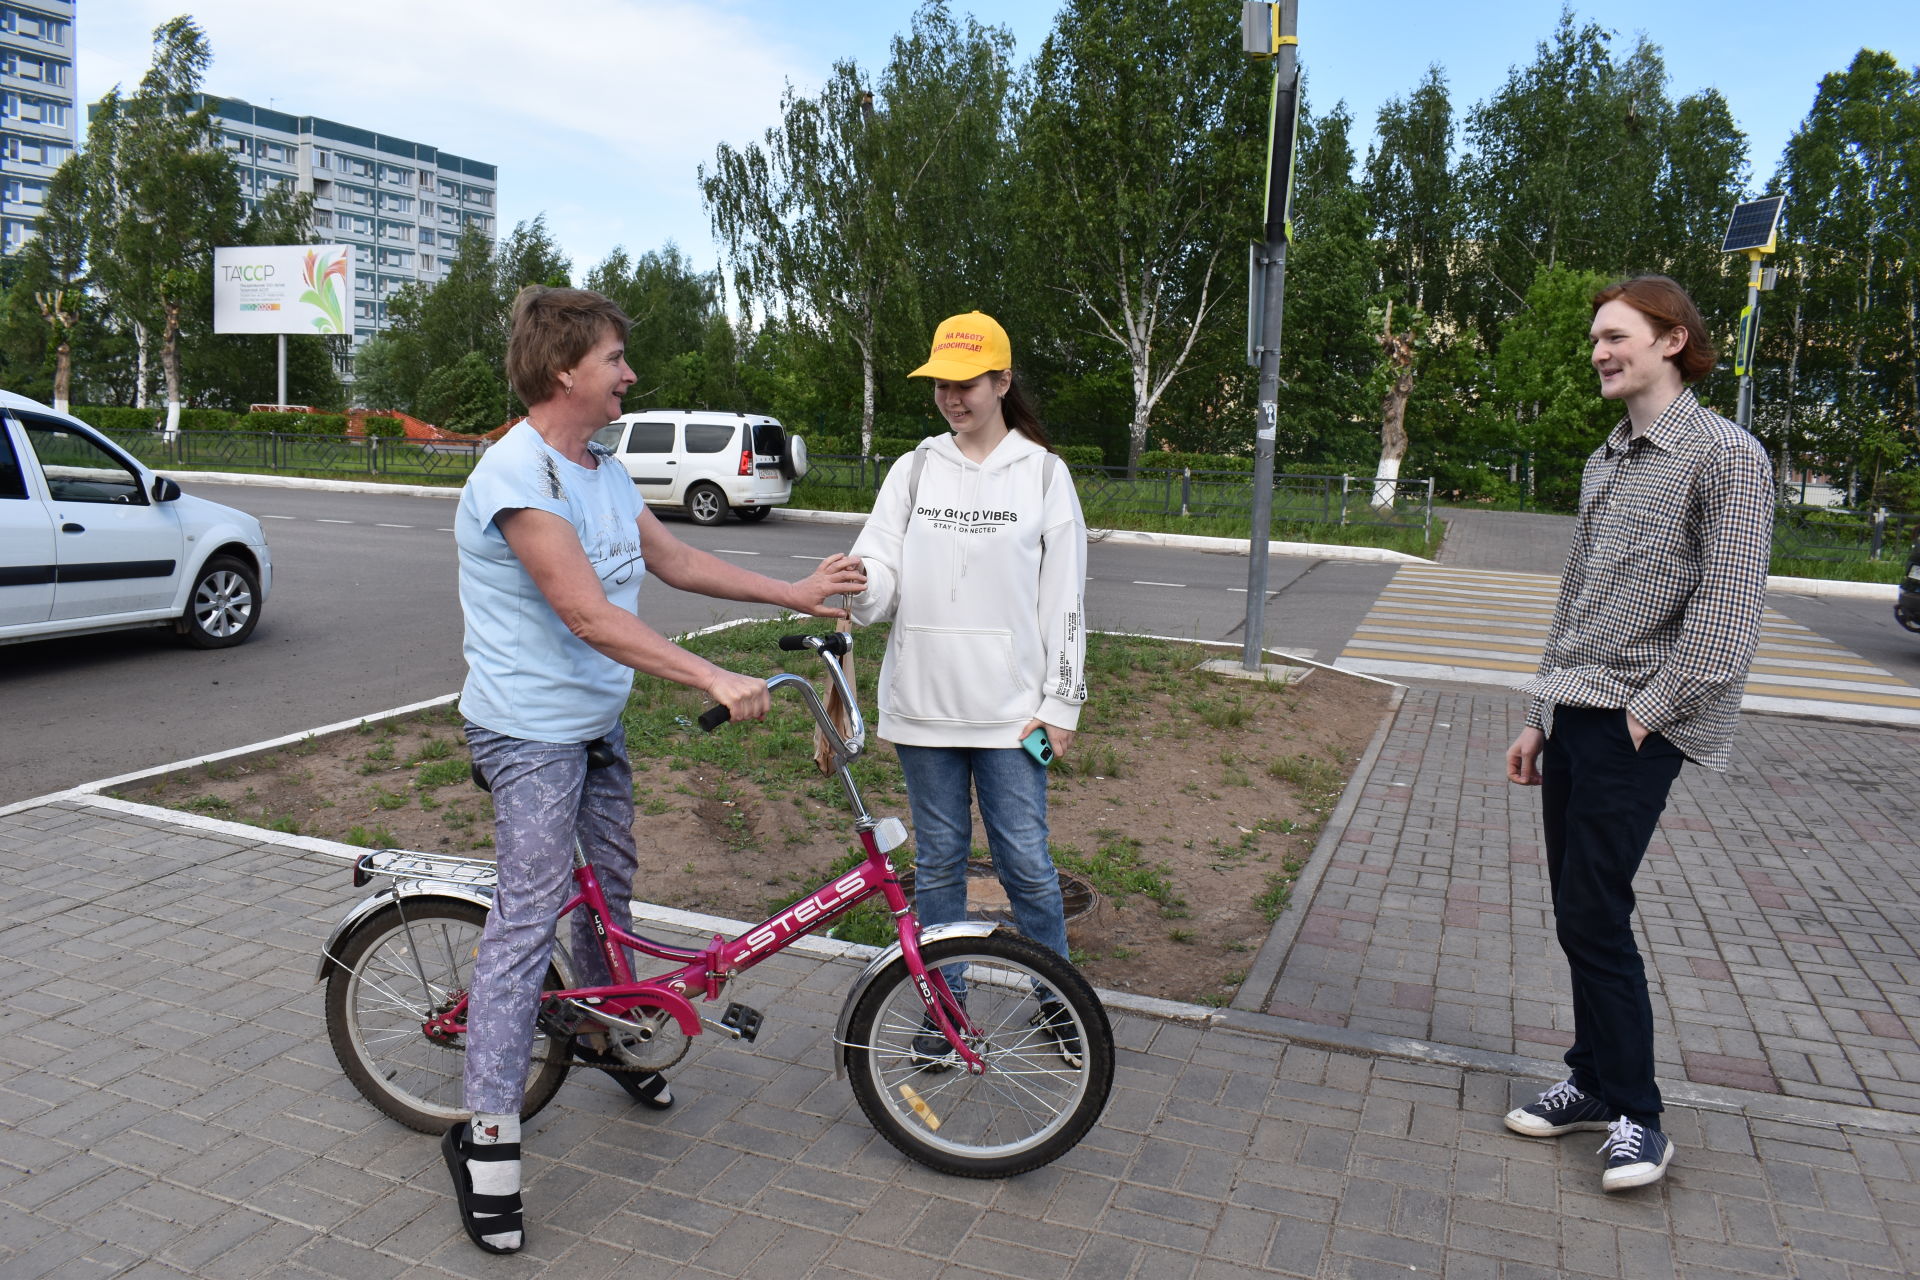 Жители Камских Полян снова выехали «На работу на велосипеде»